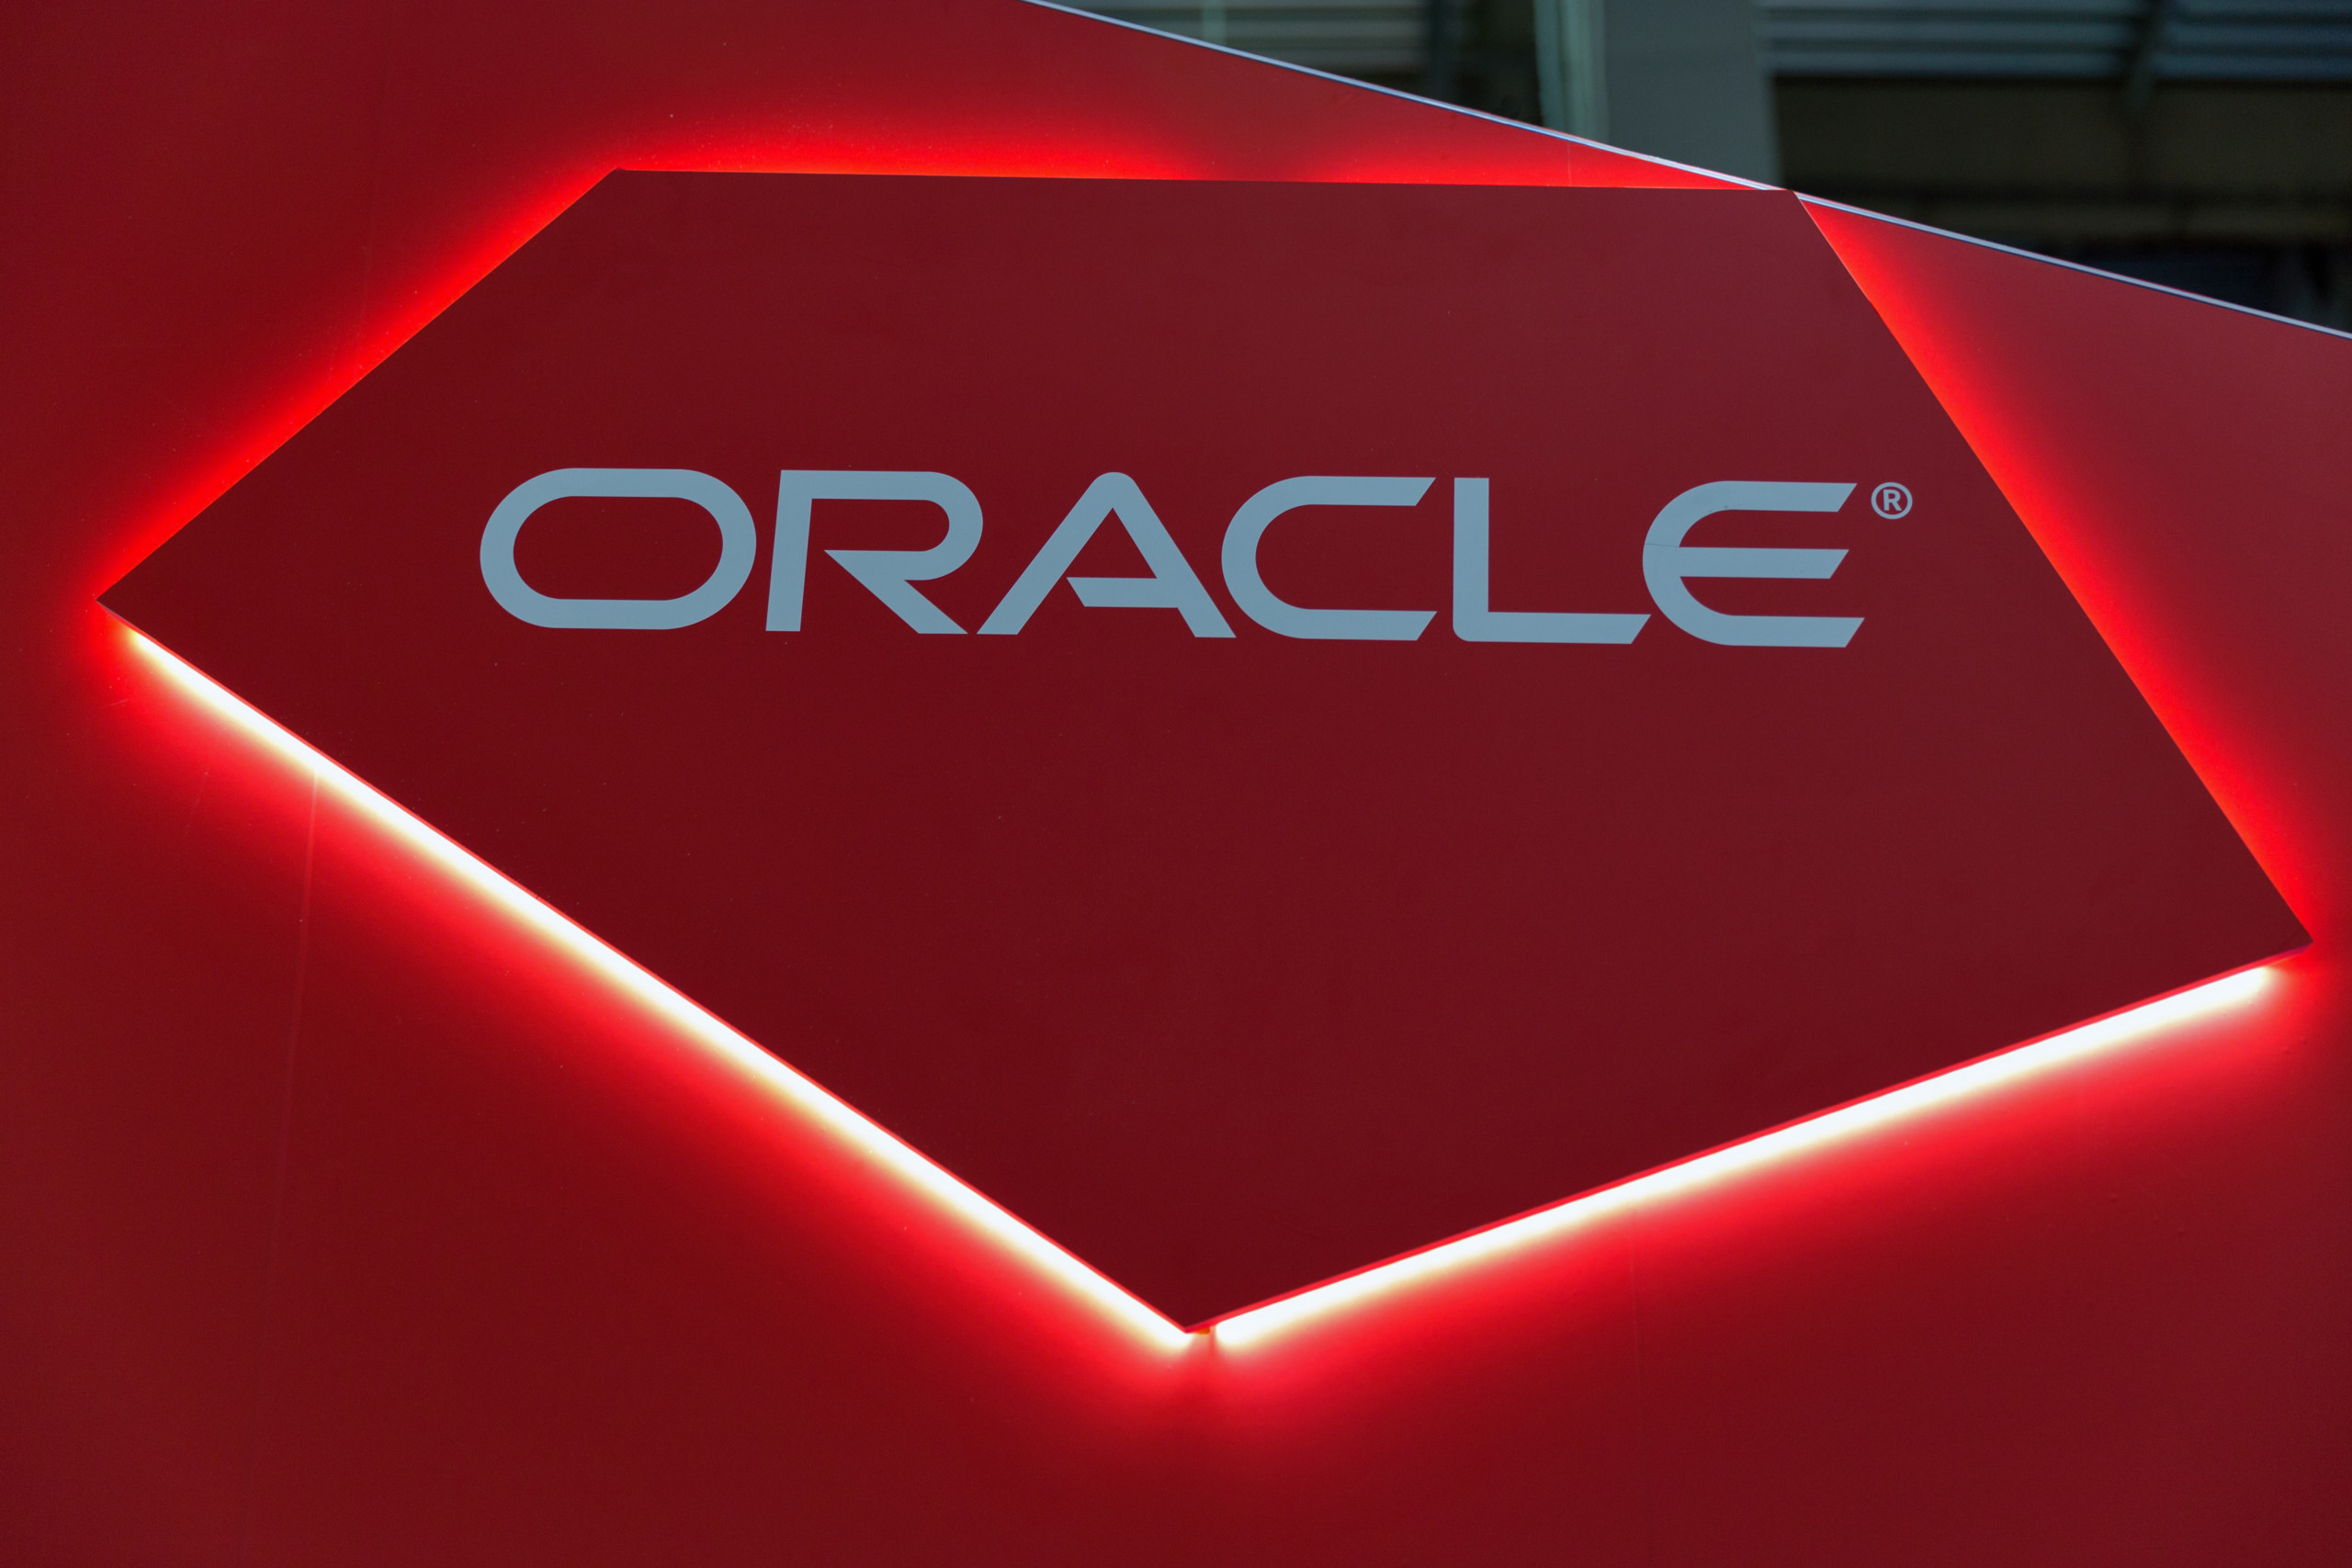 Big Call-Depotupdate: Oracle mit starker Price-Action - Beiersdorf überzeugt im Consumer-Segment mit attraktiver Langfrist-Story!